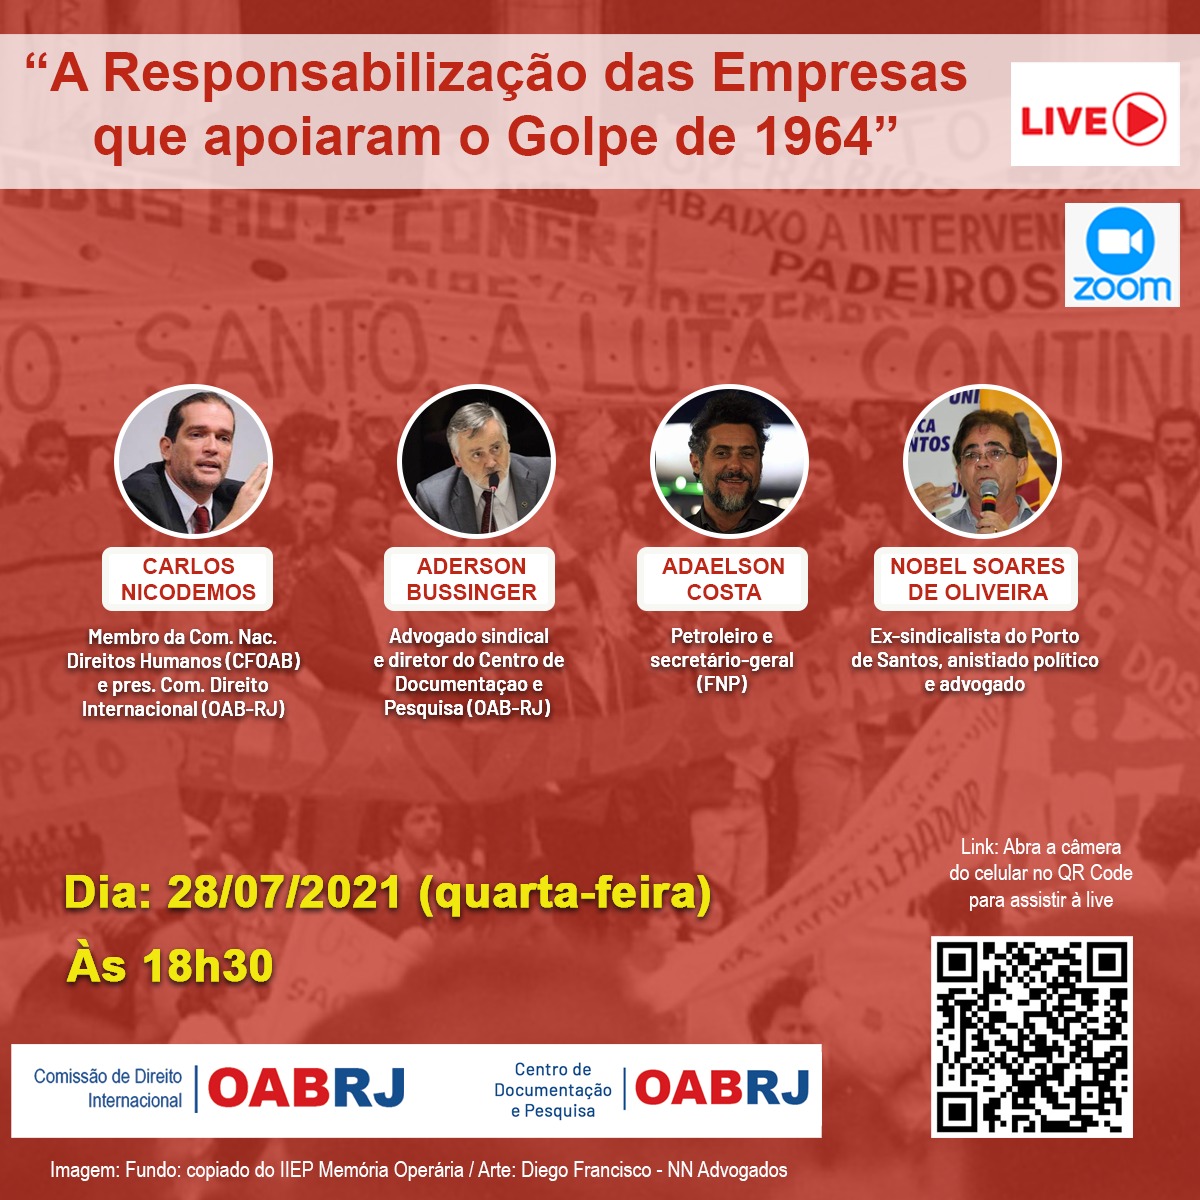 OAB-RJ promove live A responsabilizao das empresas que apoiaram o golpe de 1964